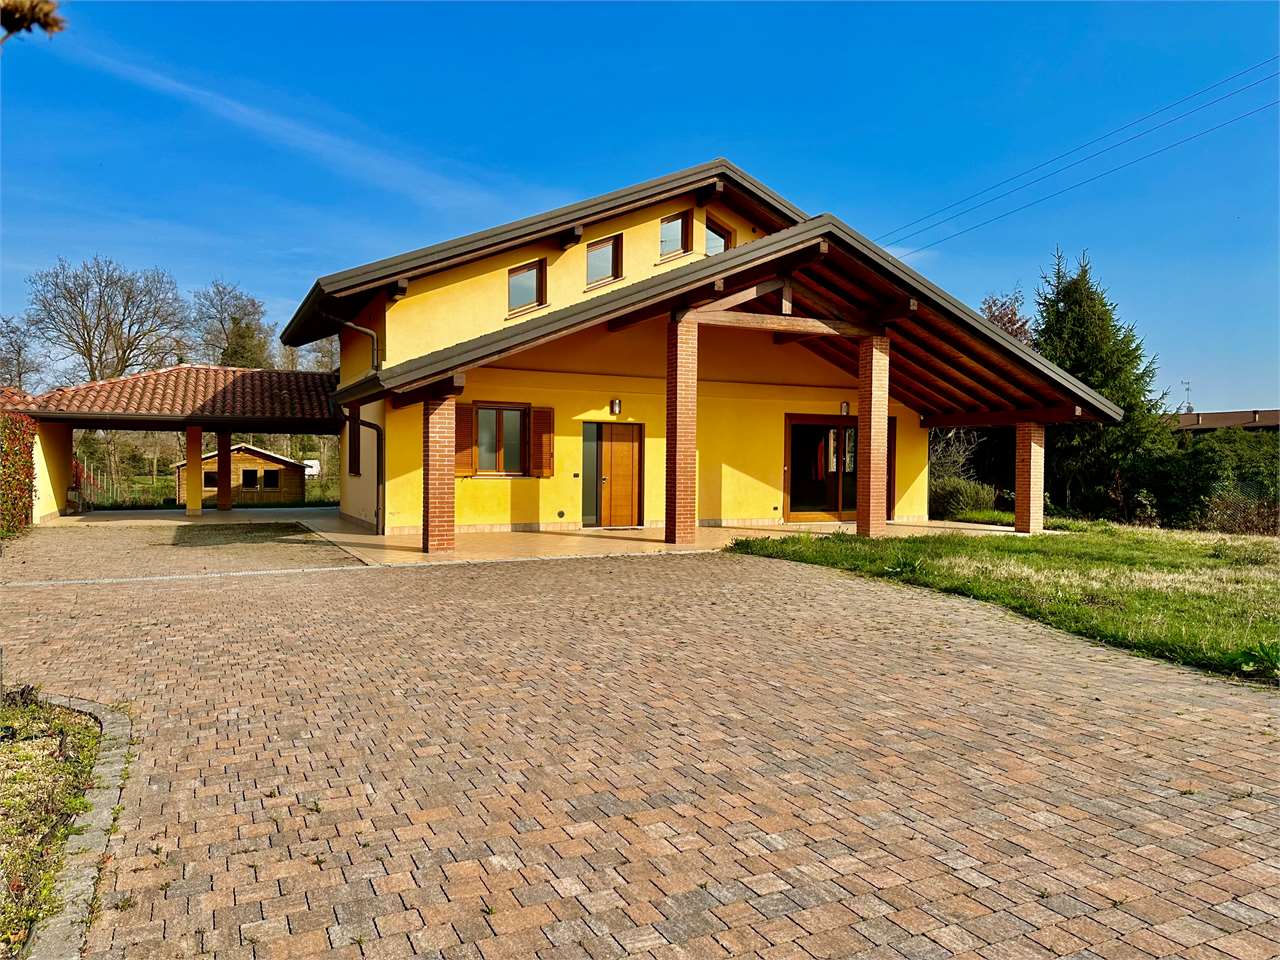 Villa in vendita a Agrate Conturbia, 5 locali, prezzo € 430.000 | CambioCasa.it